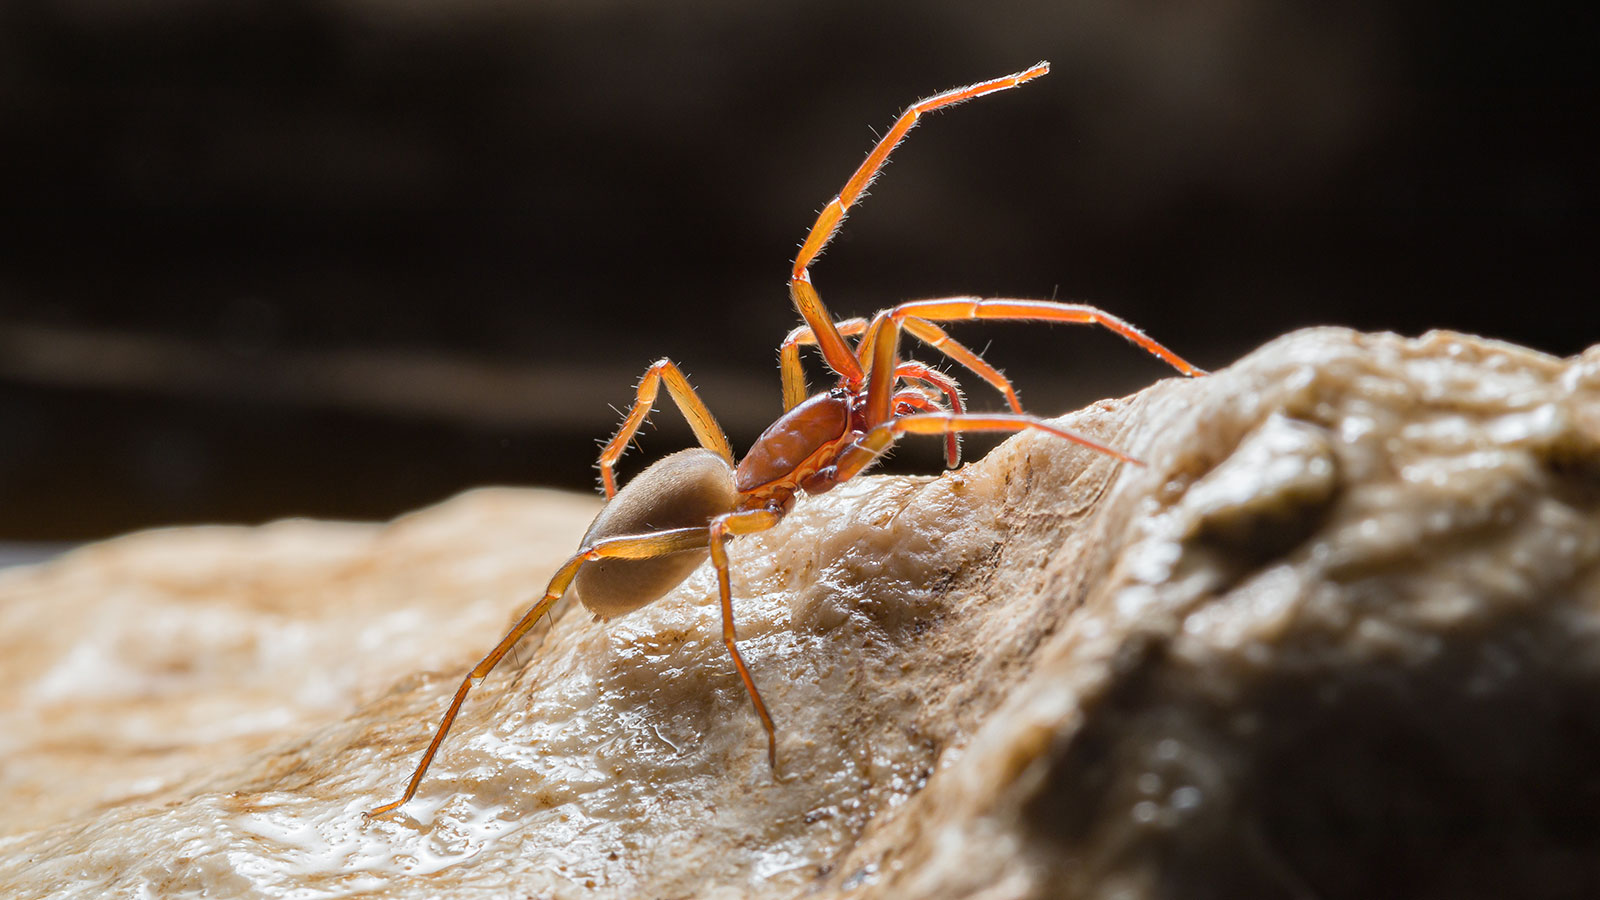 Opisane nove vrste podzemnih pauka